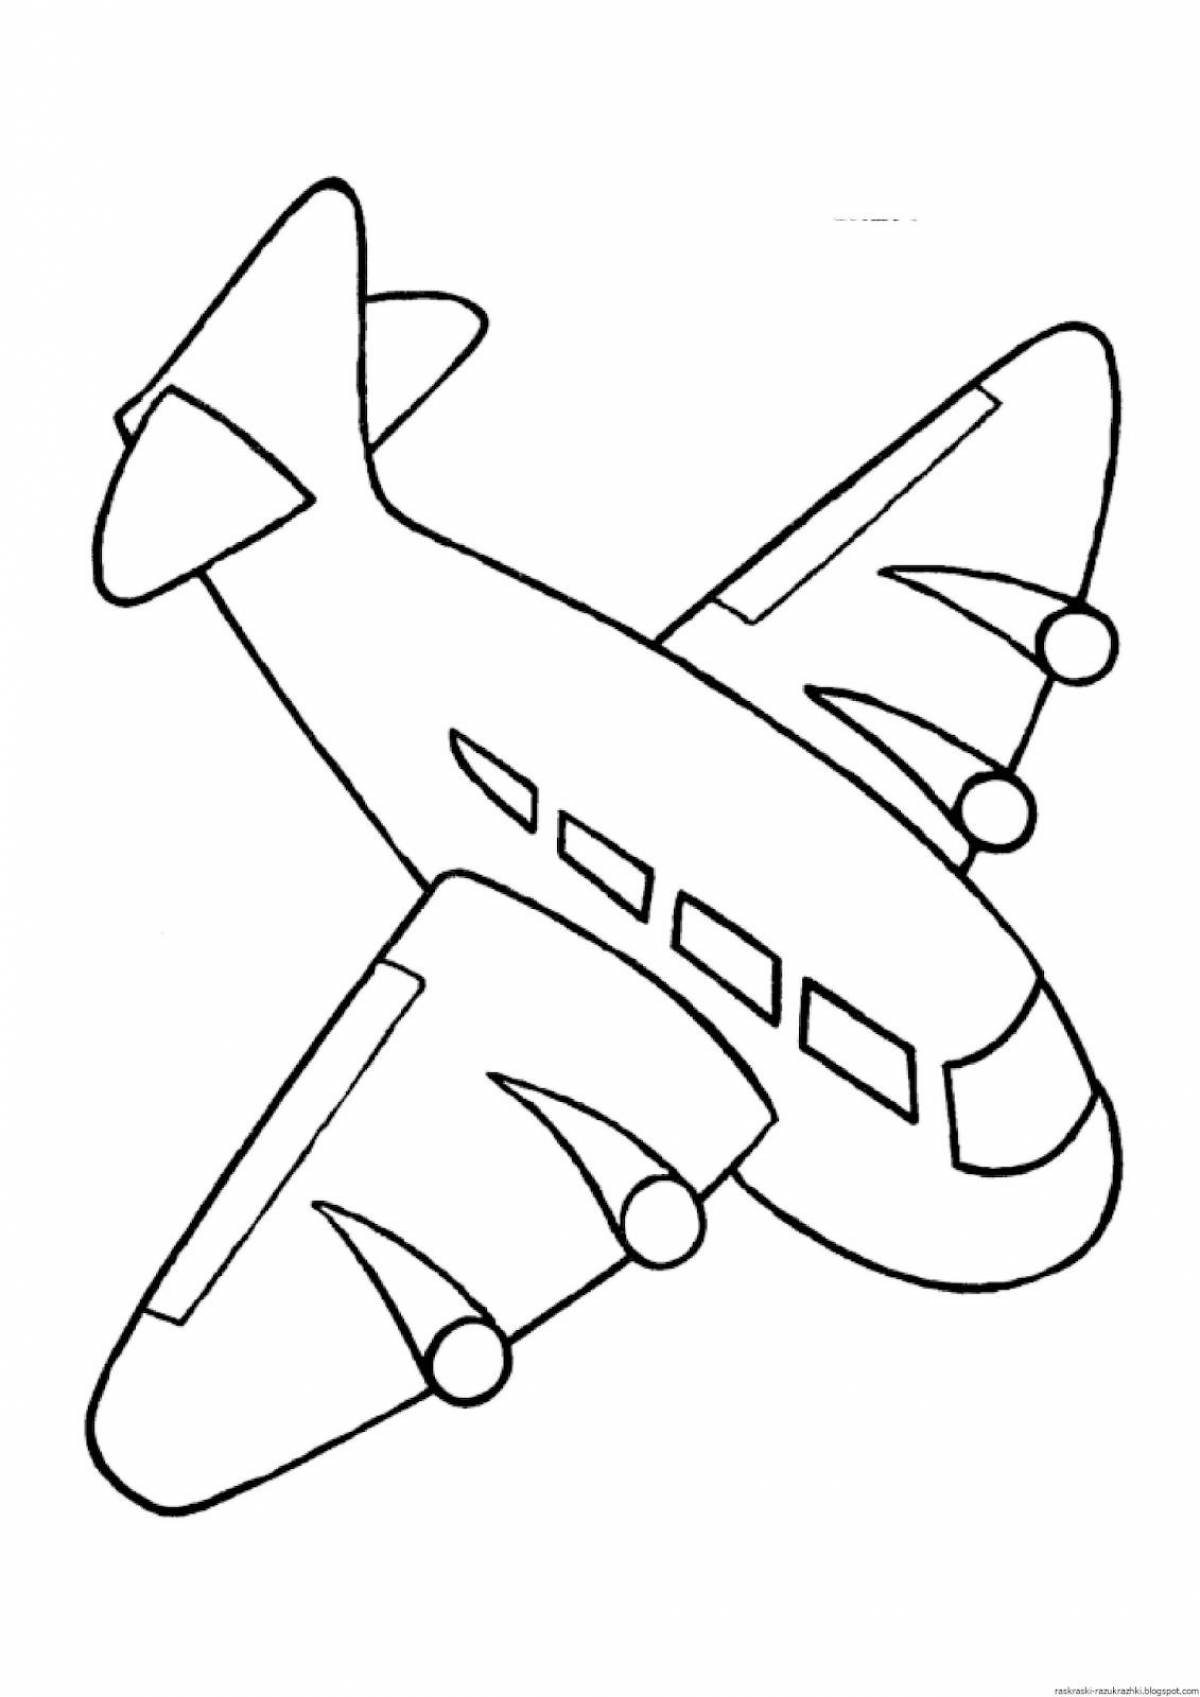 Великолепная раскраска самолетов для детей 3-4 лет